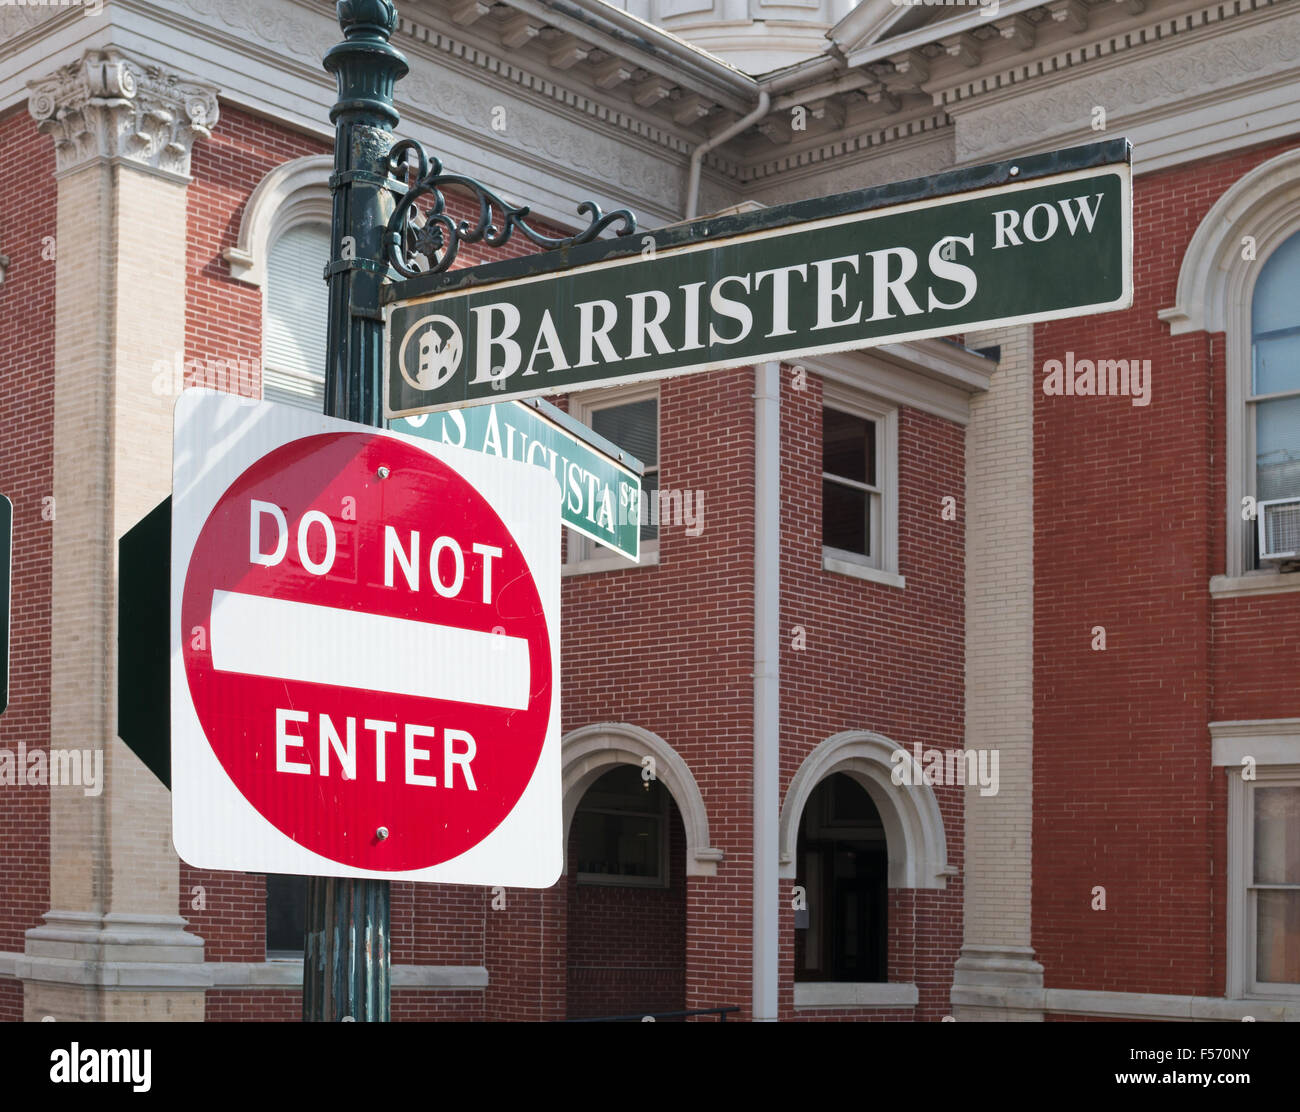 Les signes n'entrent pas et Barristers rangée, Staunton, Virginie, USA Banque D'Images